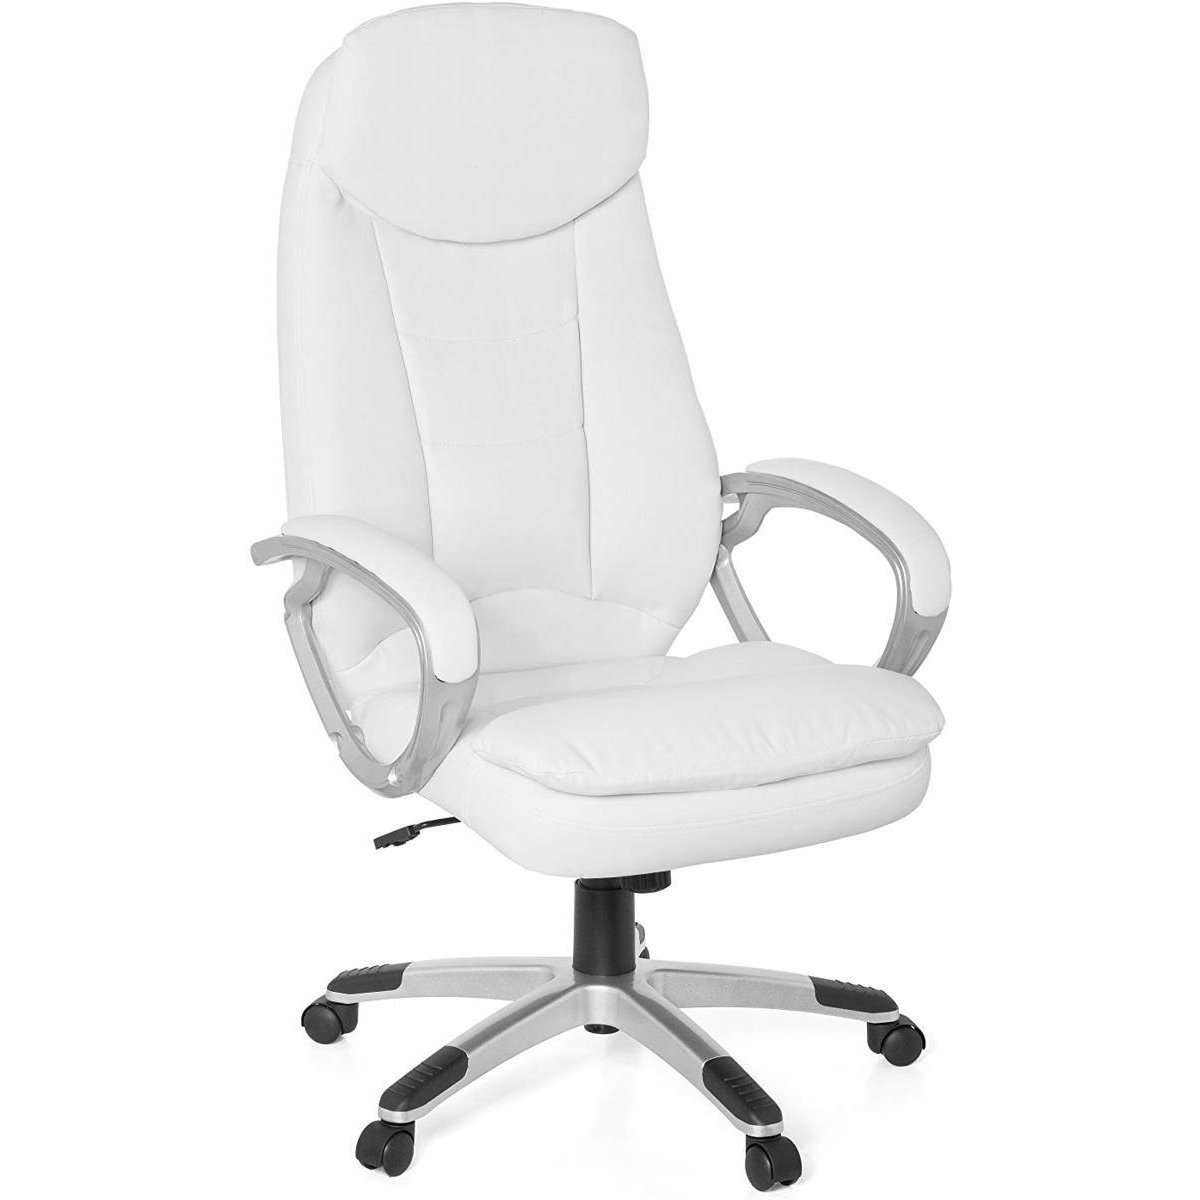 Chaise de bureau Nancy's Van Nest - Chaise de direction - Chaise pivotante ergonomique - Chaises de bureau pour adultes